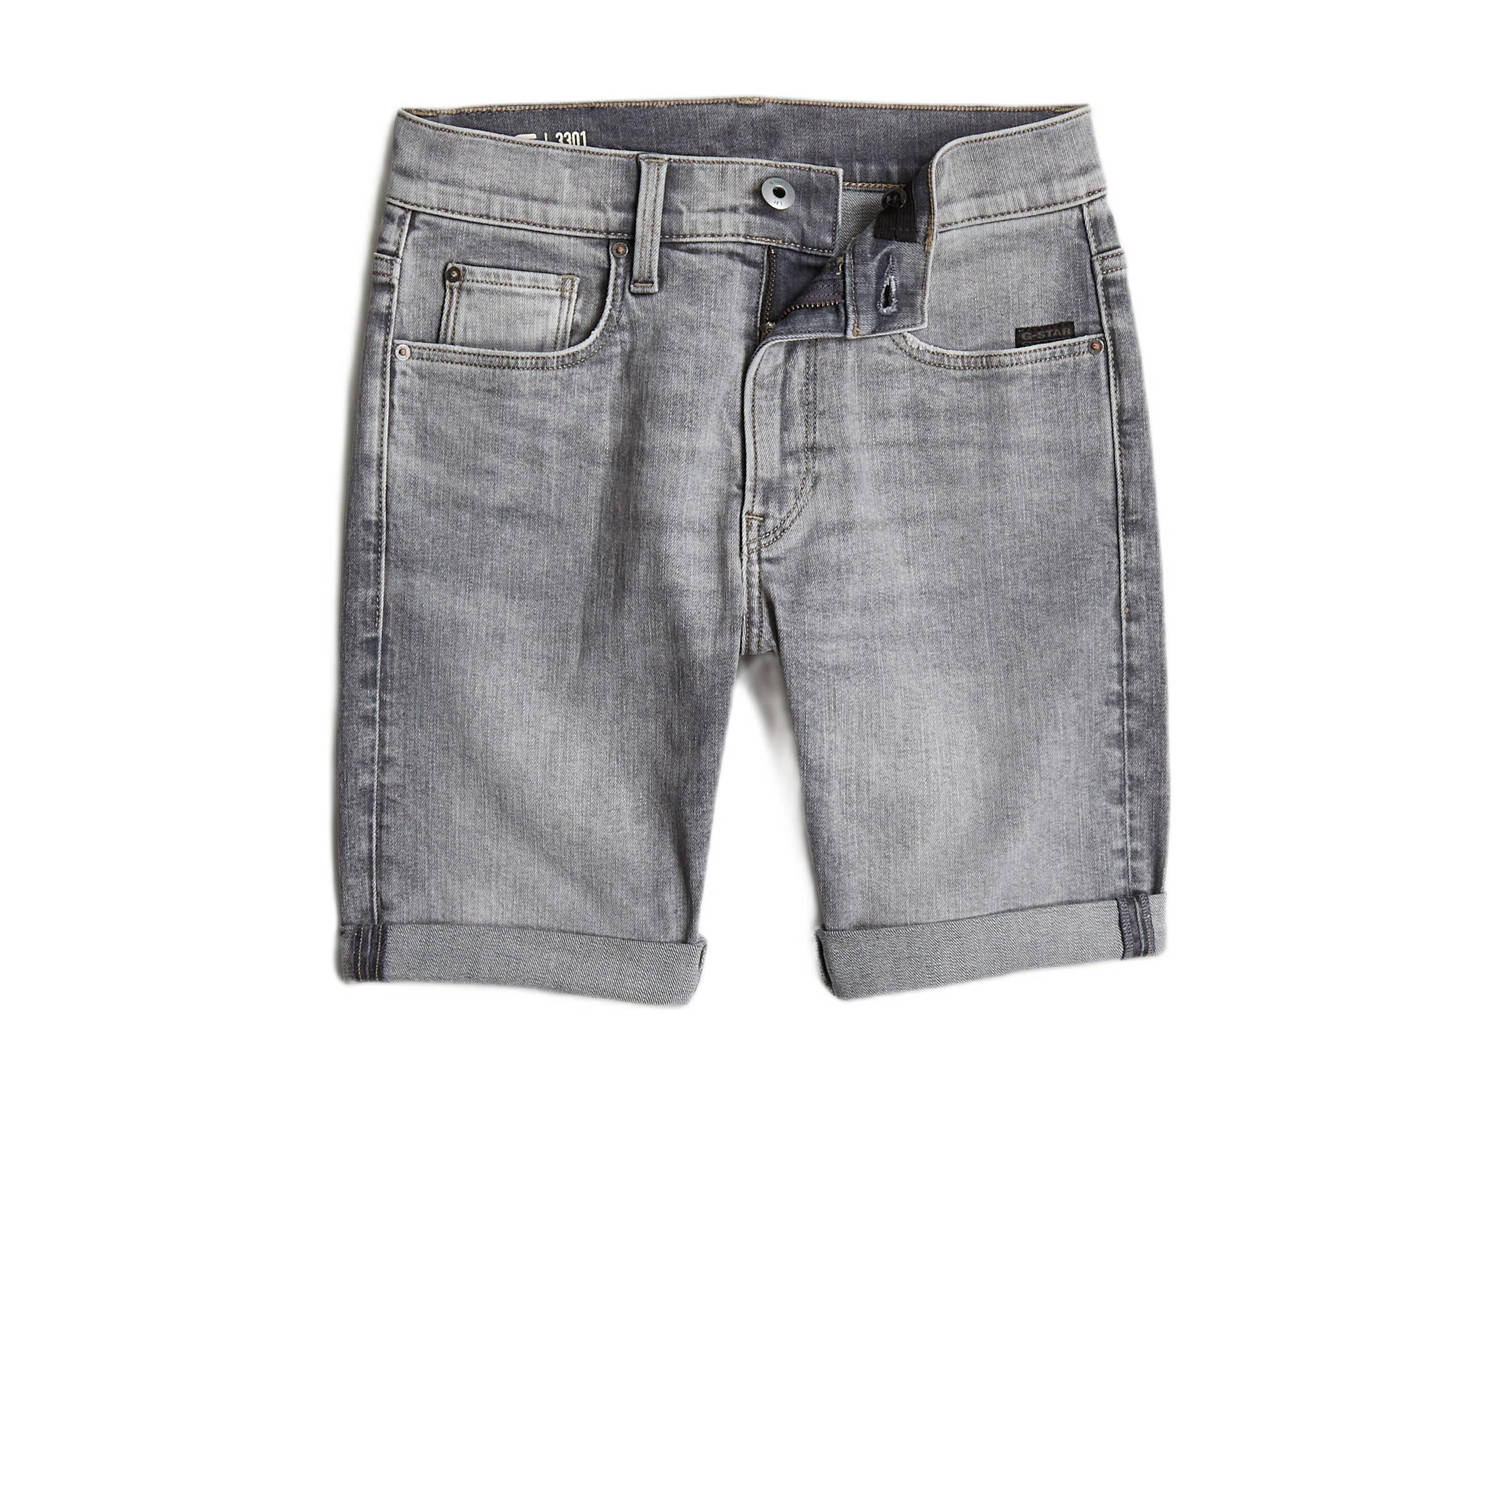 G-Star RAW 3301 slim shorts premium denim short faded grey neblina